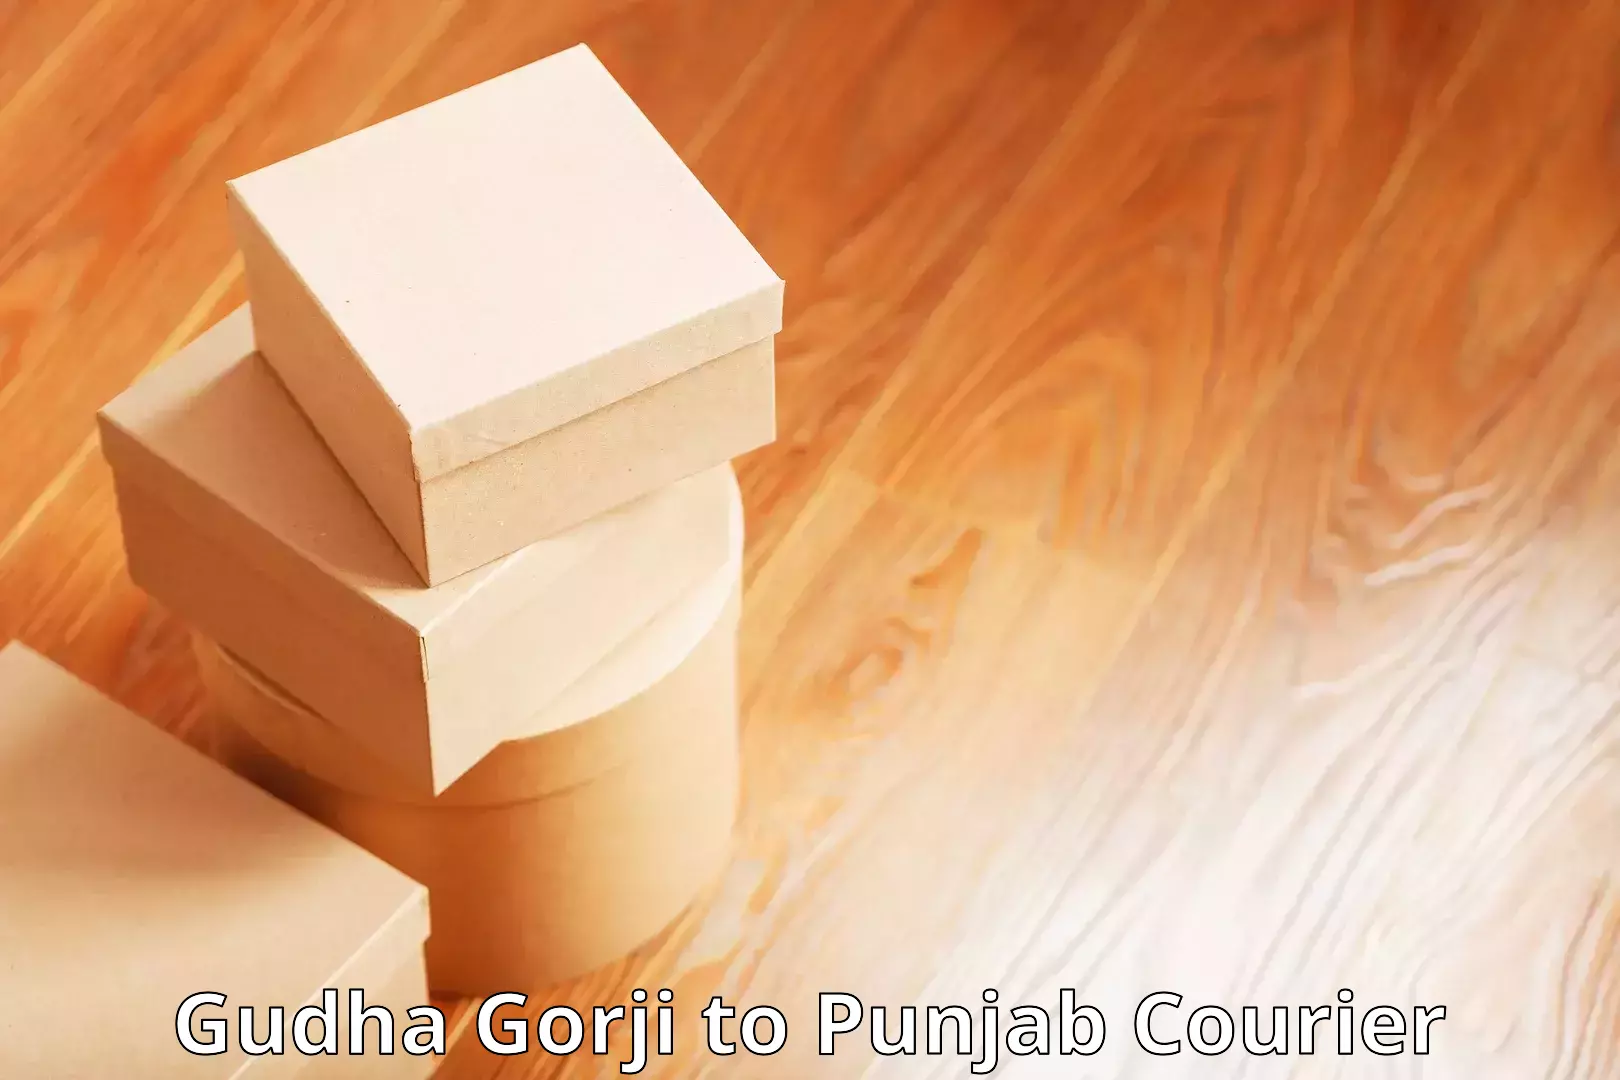 Efficient parcel service Gudha Gorji to Punjab